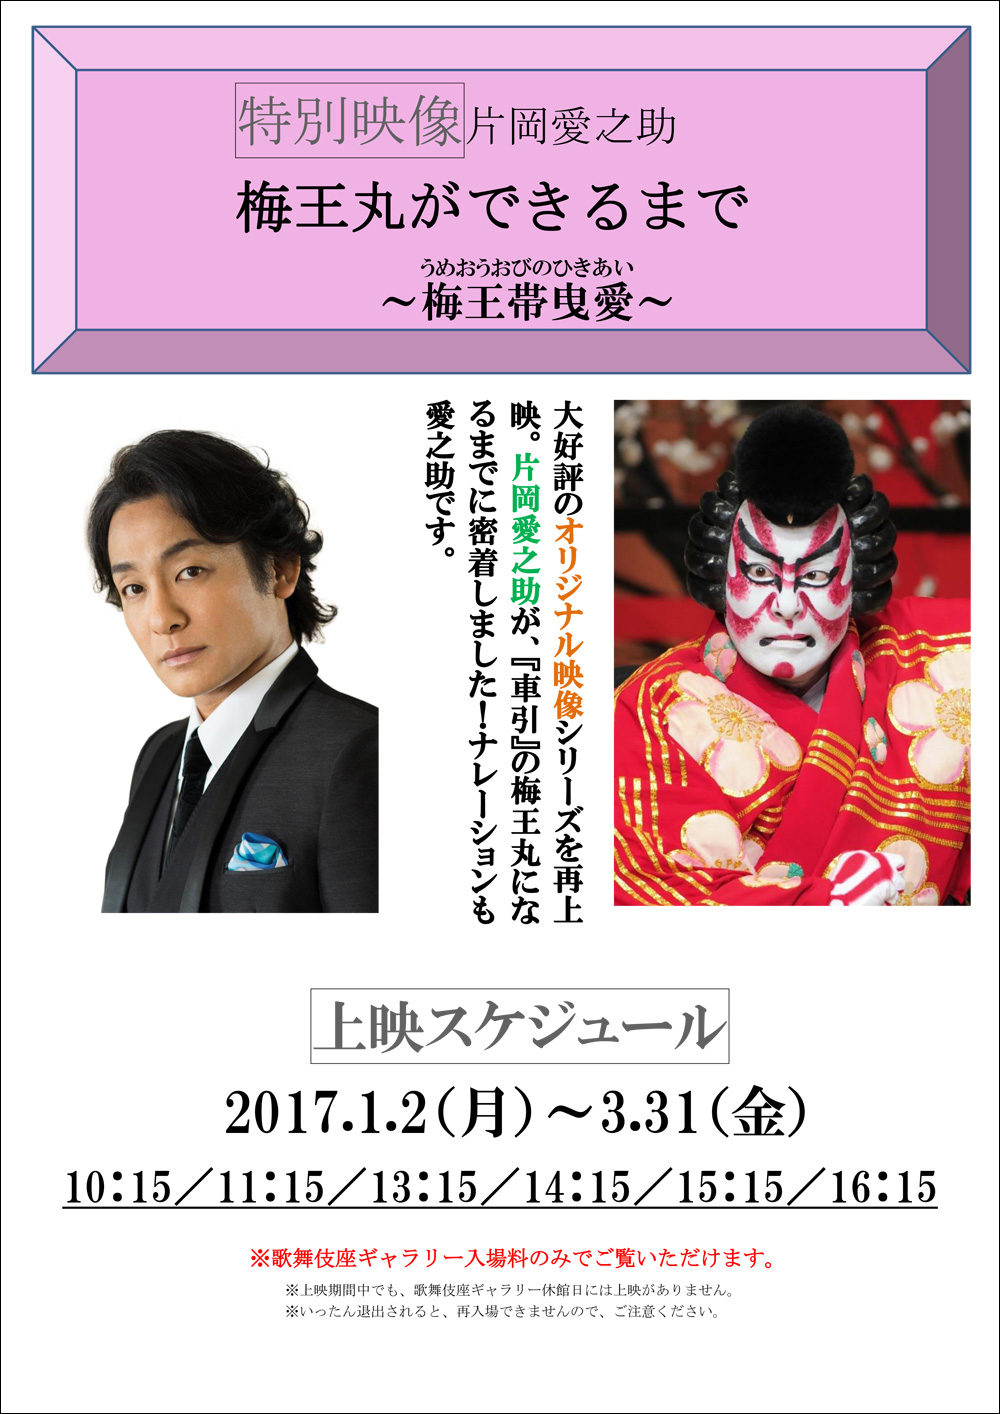 歌舞伎座ギャラリー「特別映像」1月のスケジュール決定